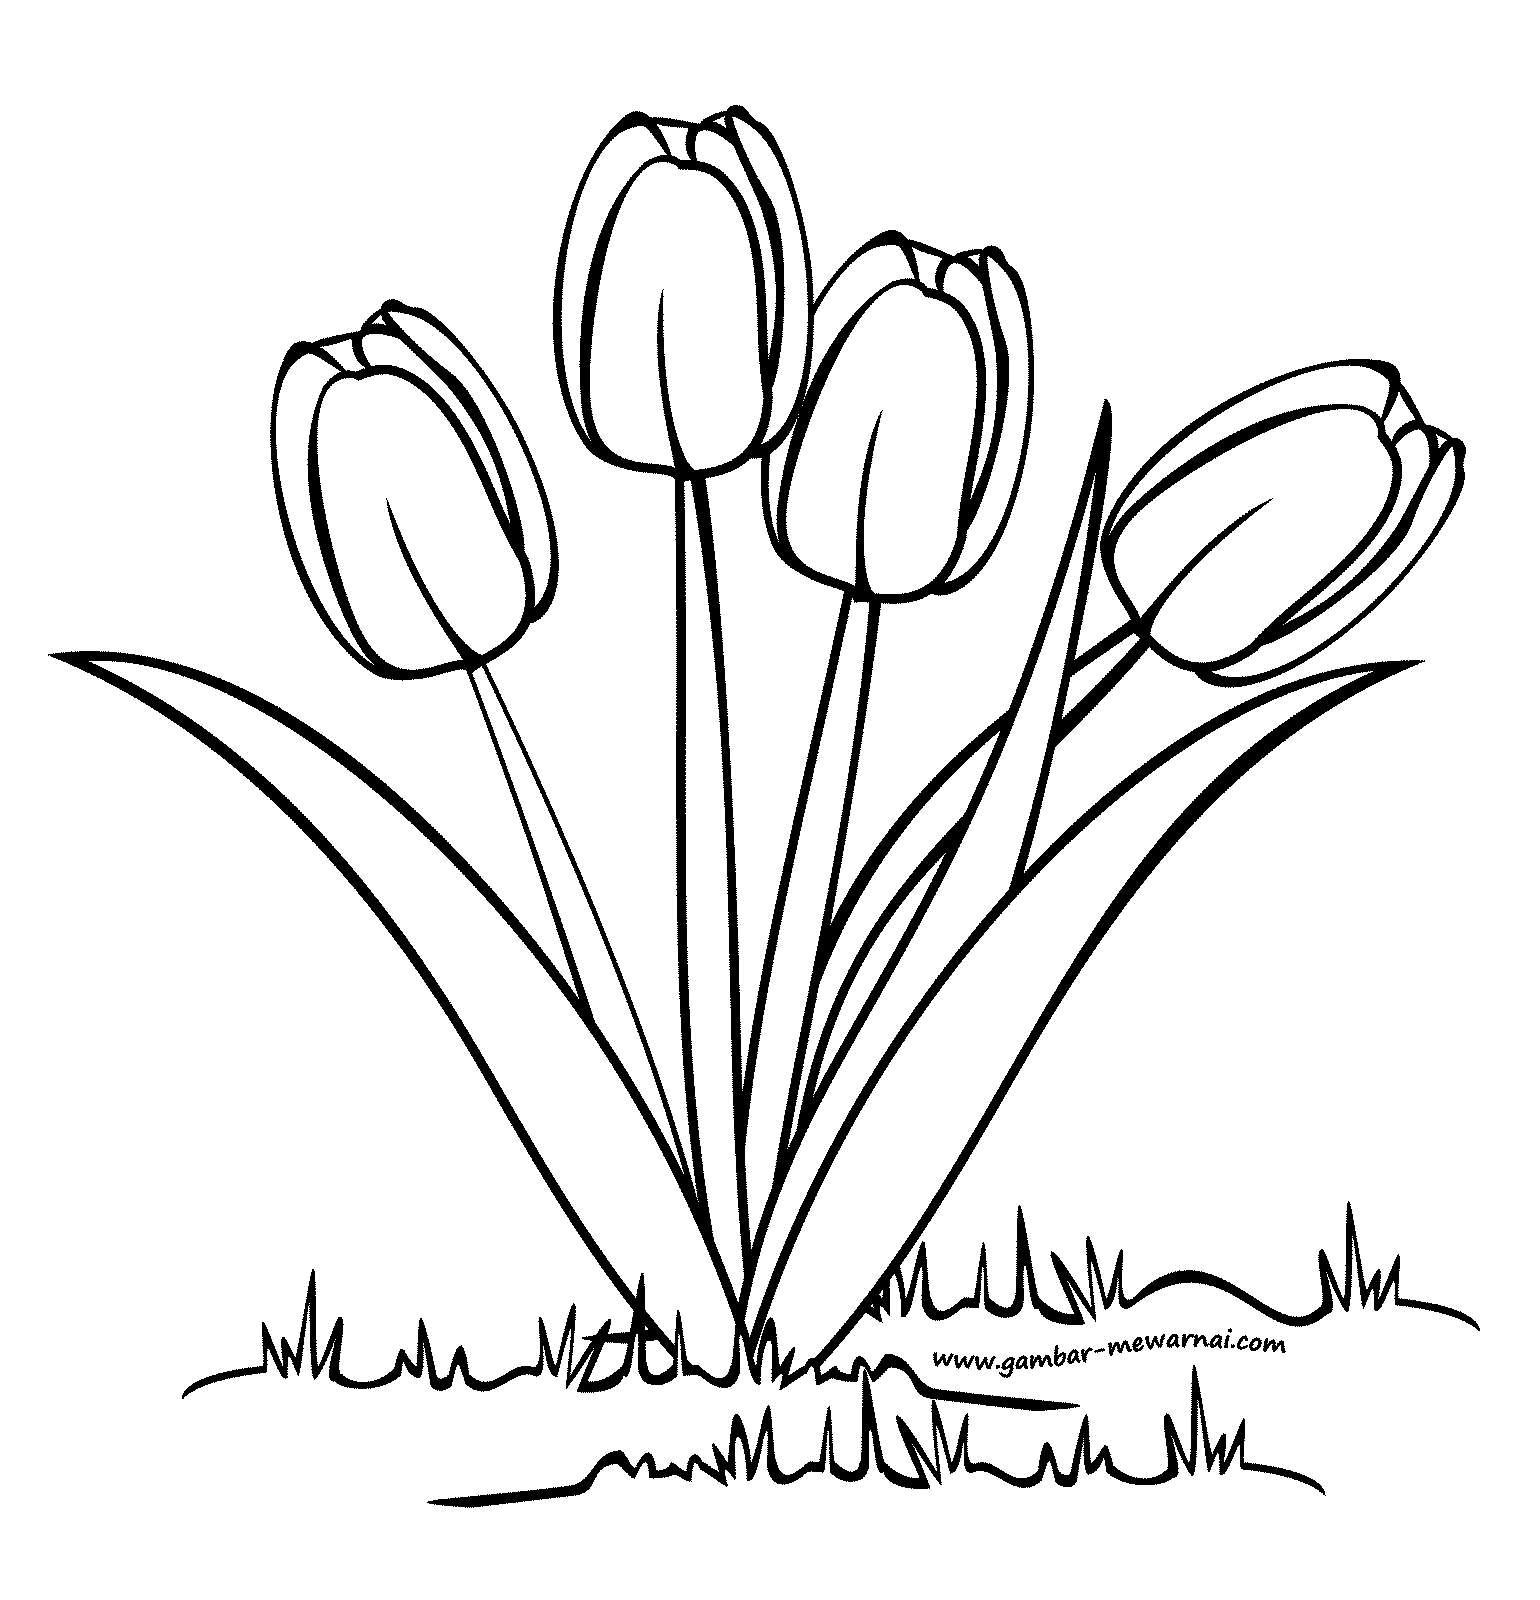 Gambar Sketsa Bunga Tulip